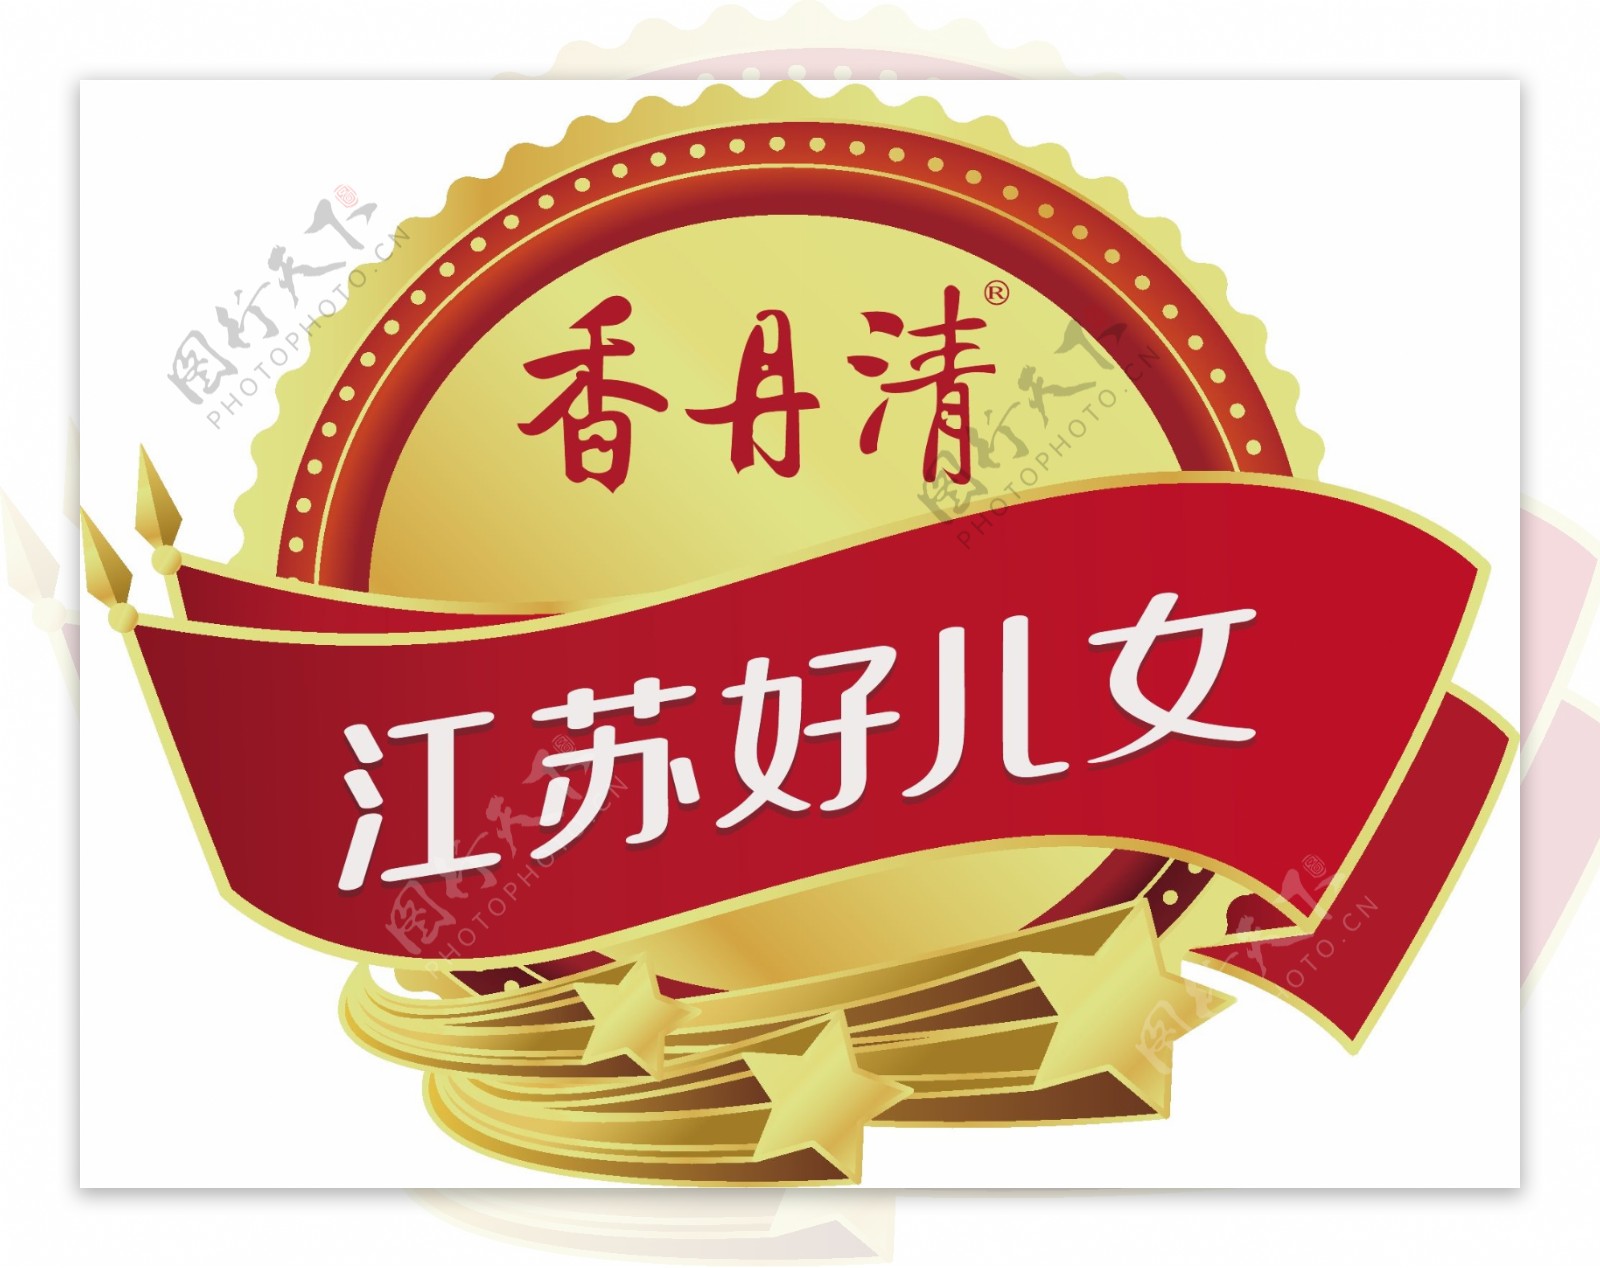 香丹清江苏好儿女logo